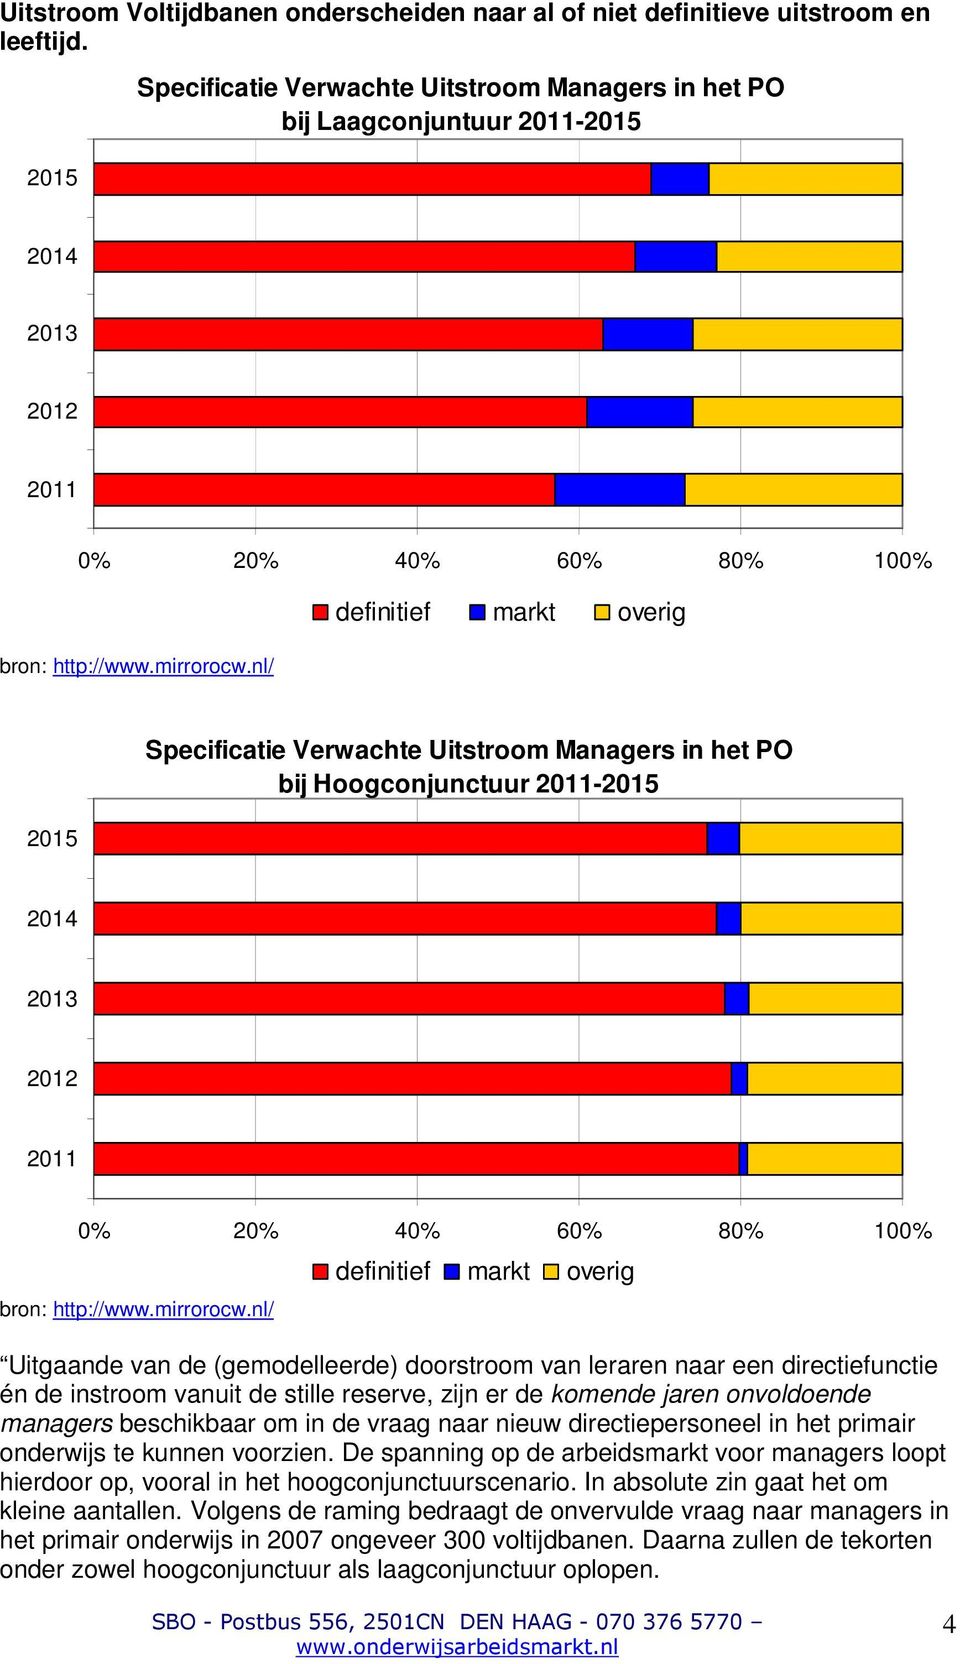 nl/ definitief markt overig 2015 Specificatie Verwachte Uitstroom Managers in het PO bij Hoogconjunctuur 2011-2015 2014 2013 2012 2011 0% 20% 40% 60% 80% 100% bron: http://www.mirrorocw.